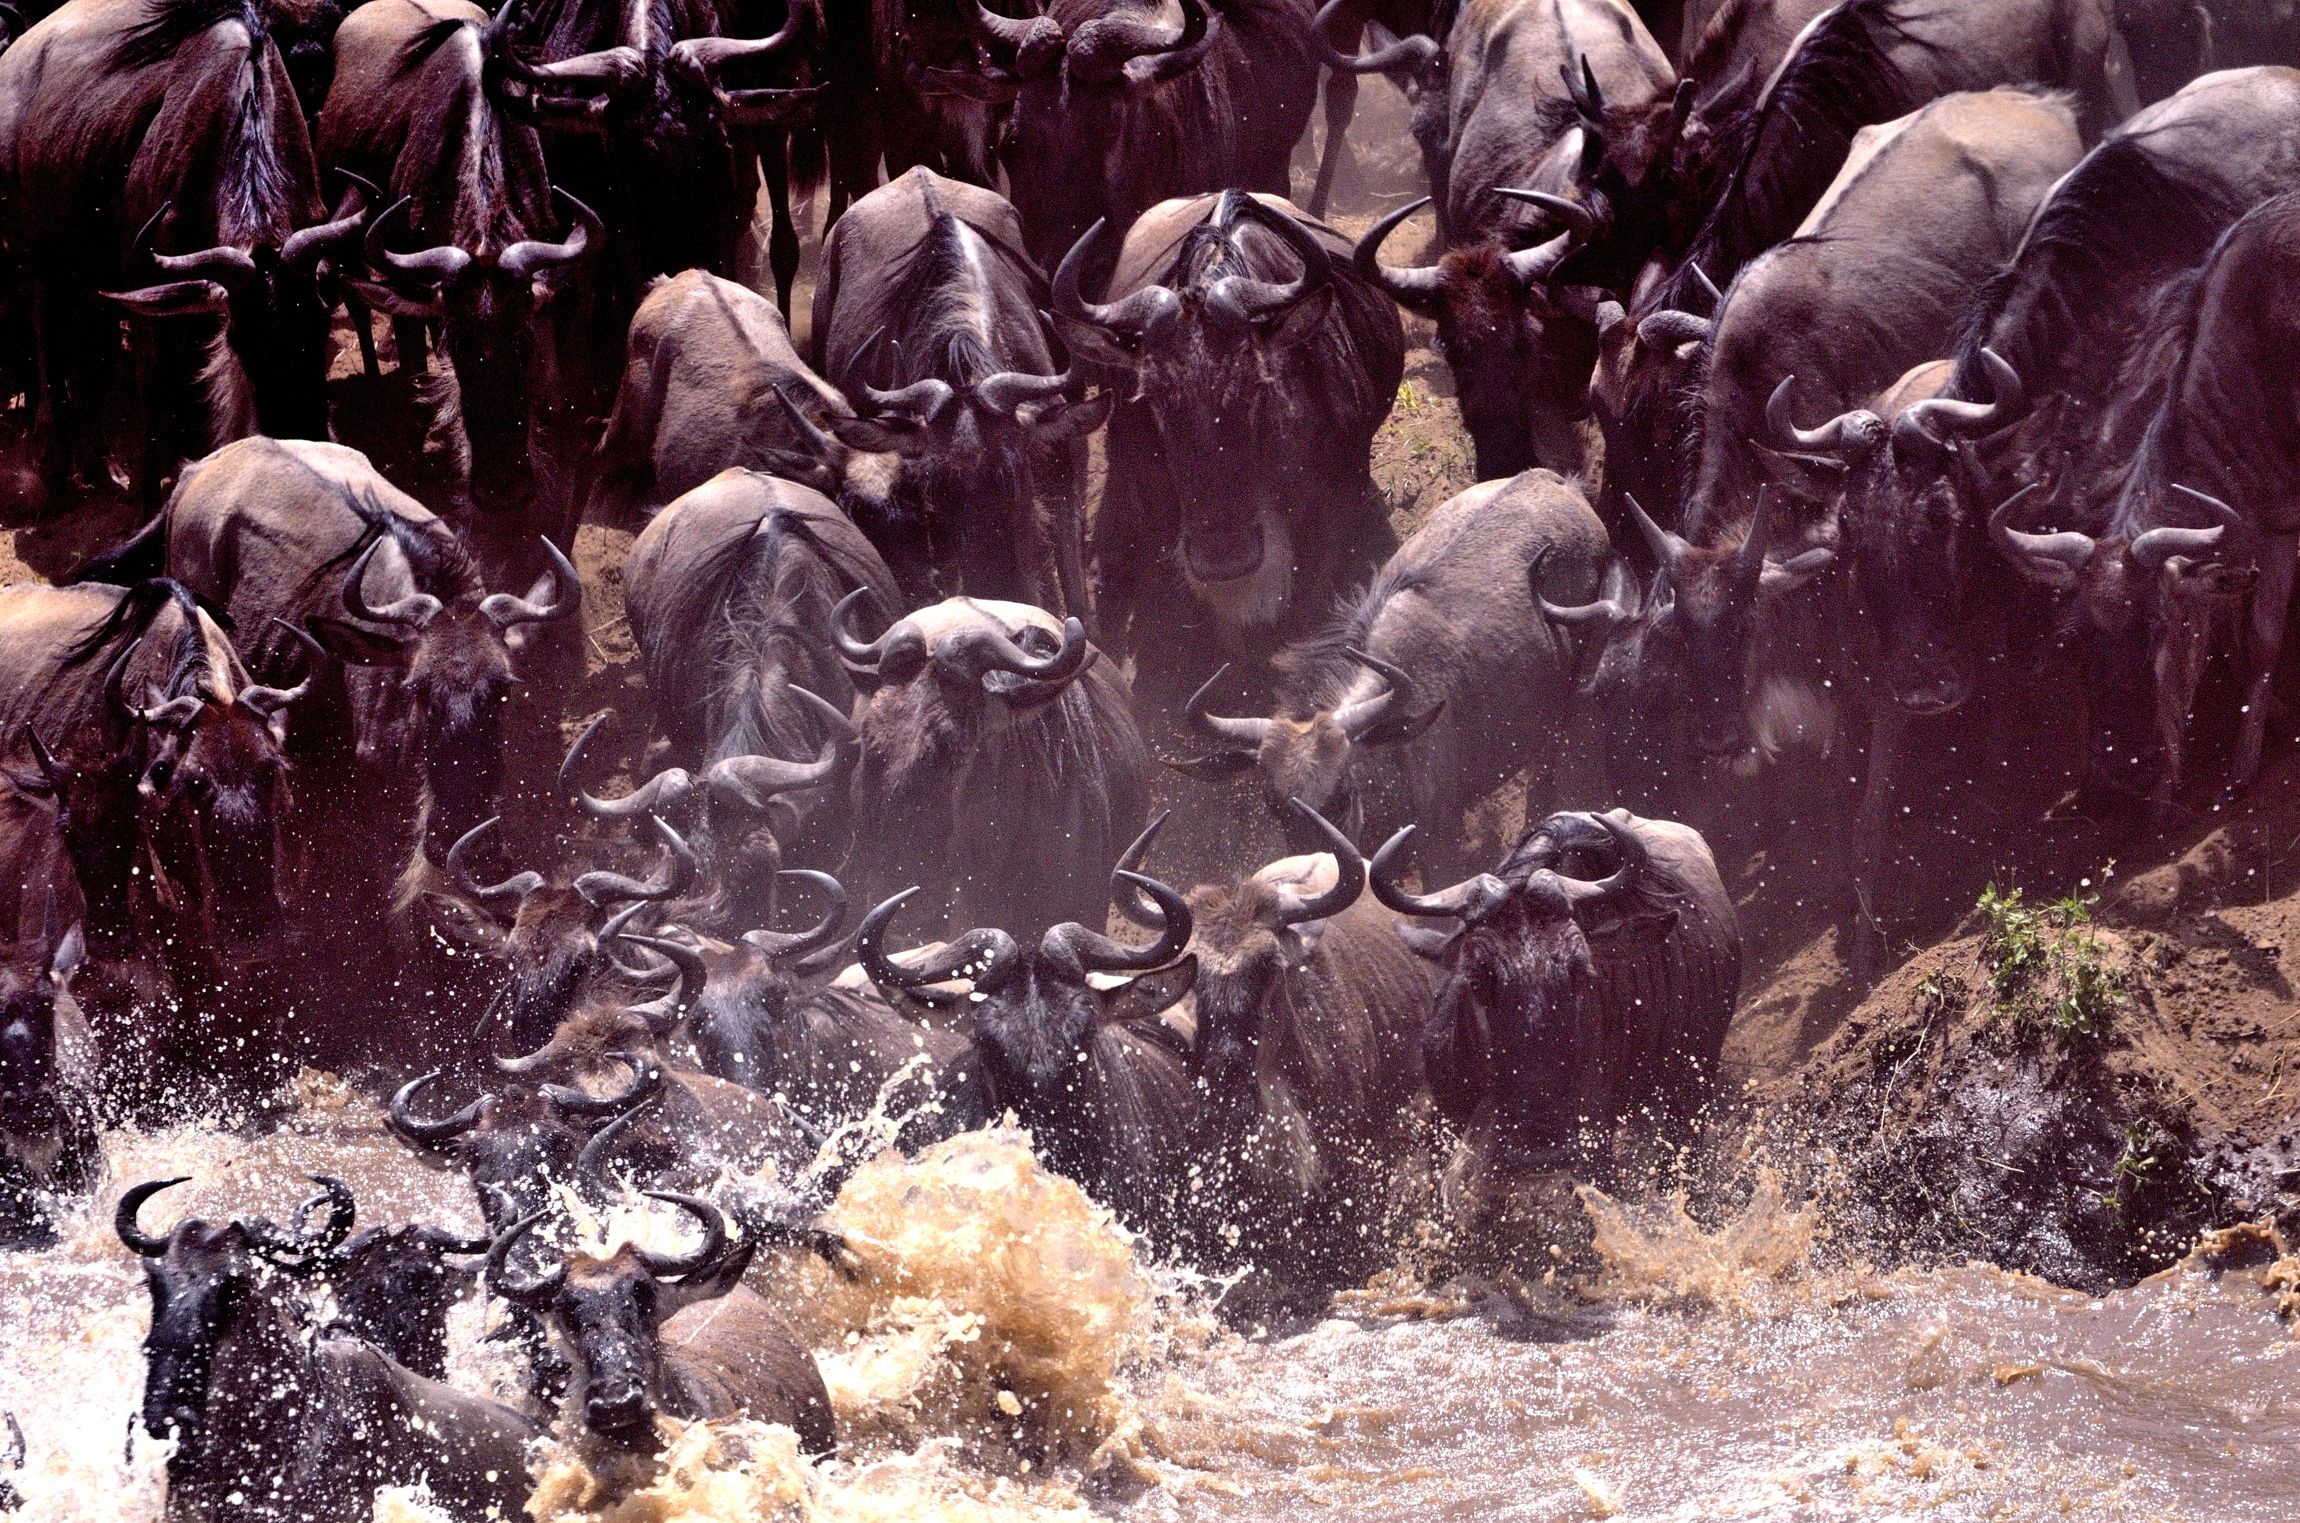 wildebeest crossing...